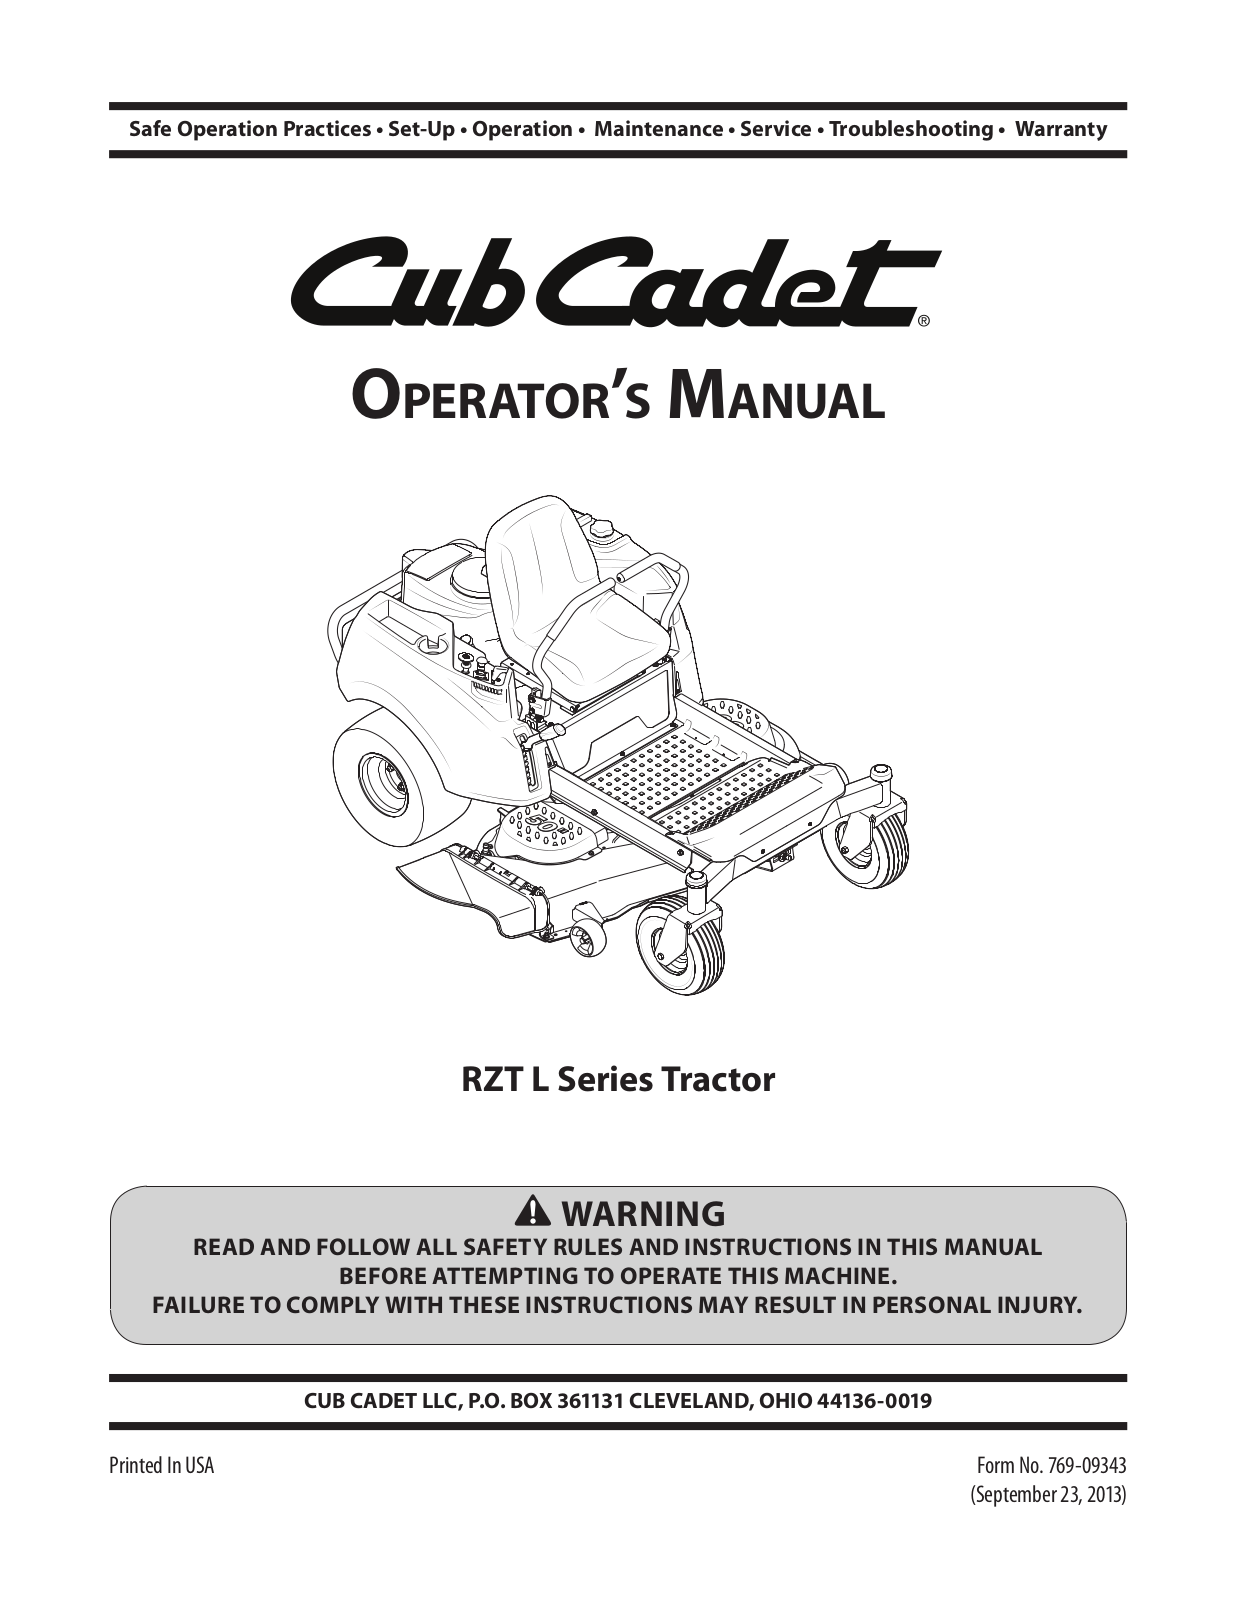 Cub cadet RZT L54, RZT L46, RZT L50, RZT L42 User Manual